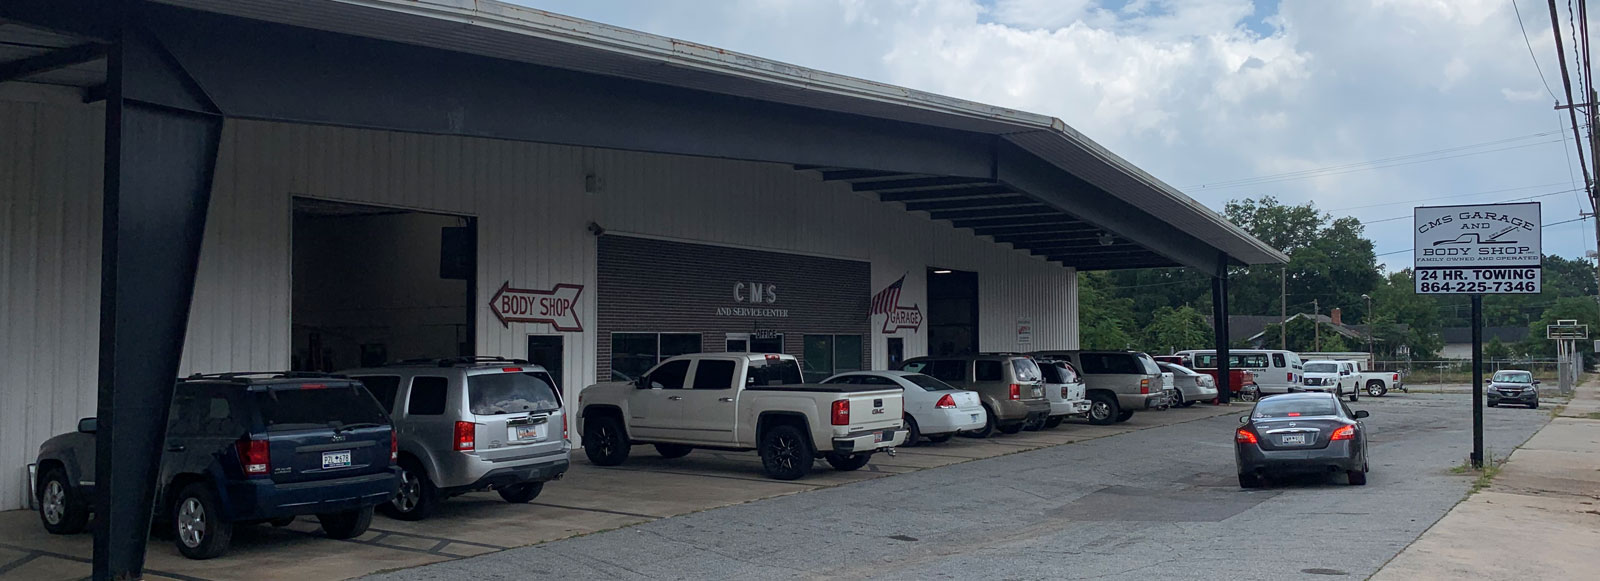 Auto Repair, Anderson SC | CMS Garage & Body Shop